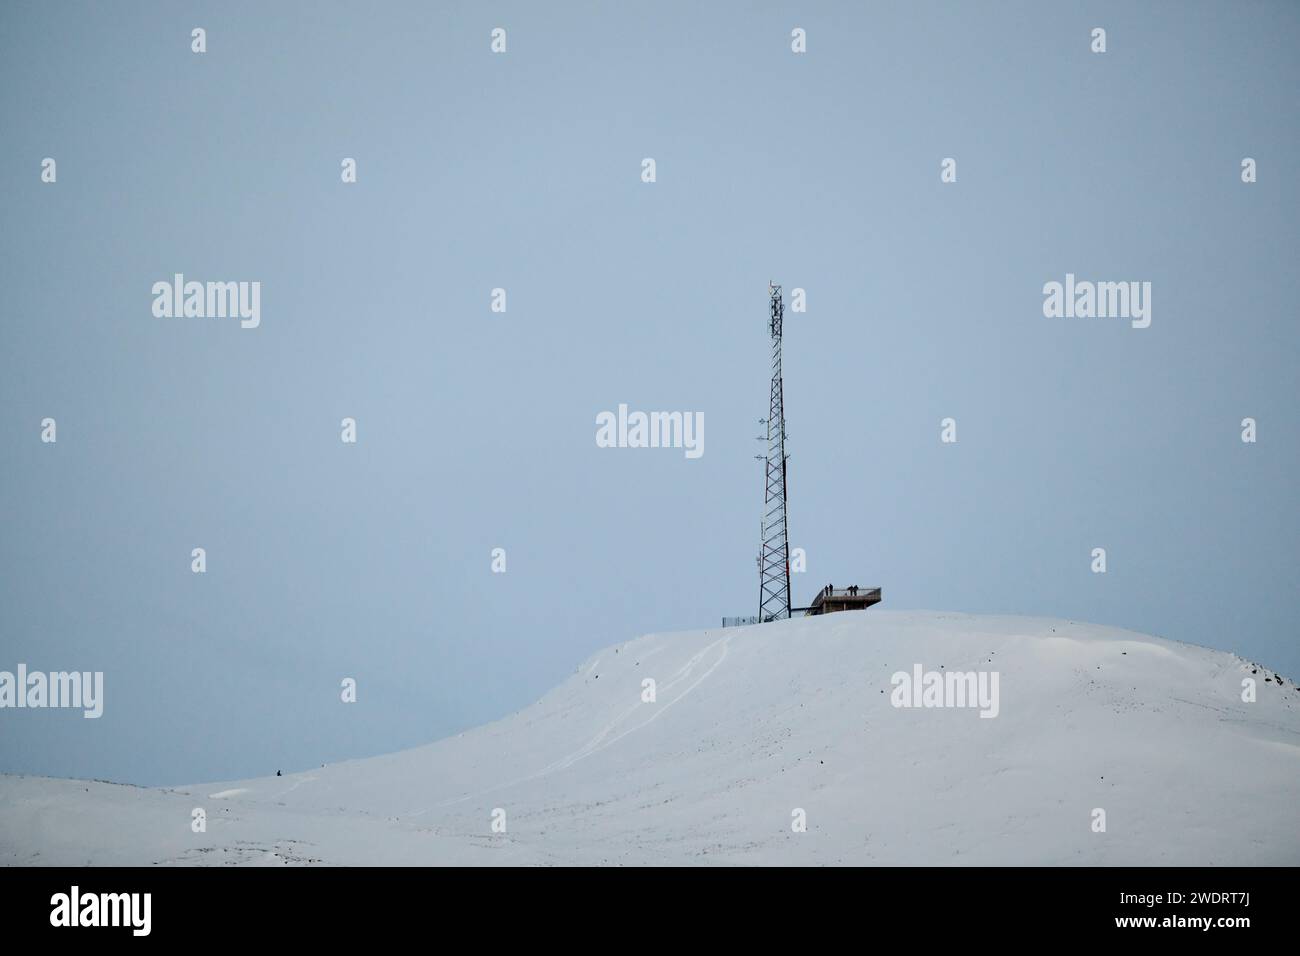 Antenna mast on snowy mountain top in winter Stock Photo